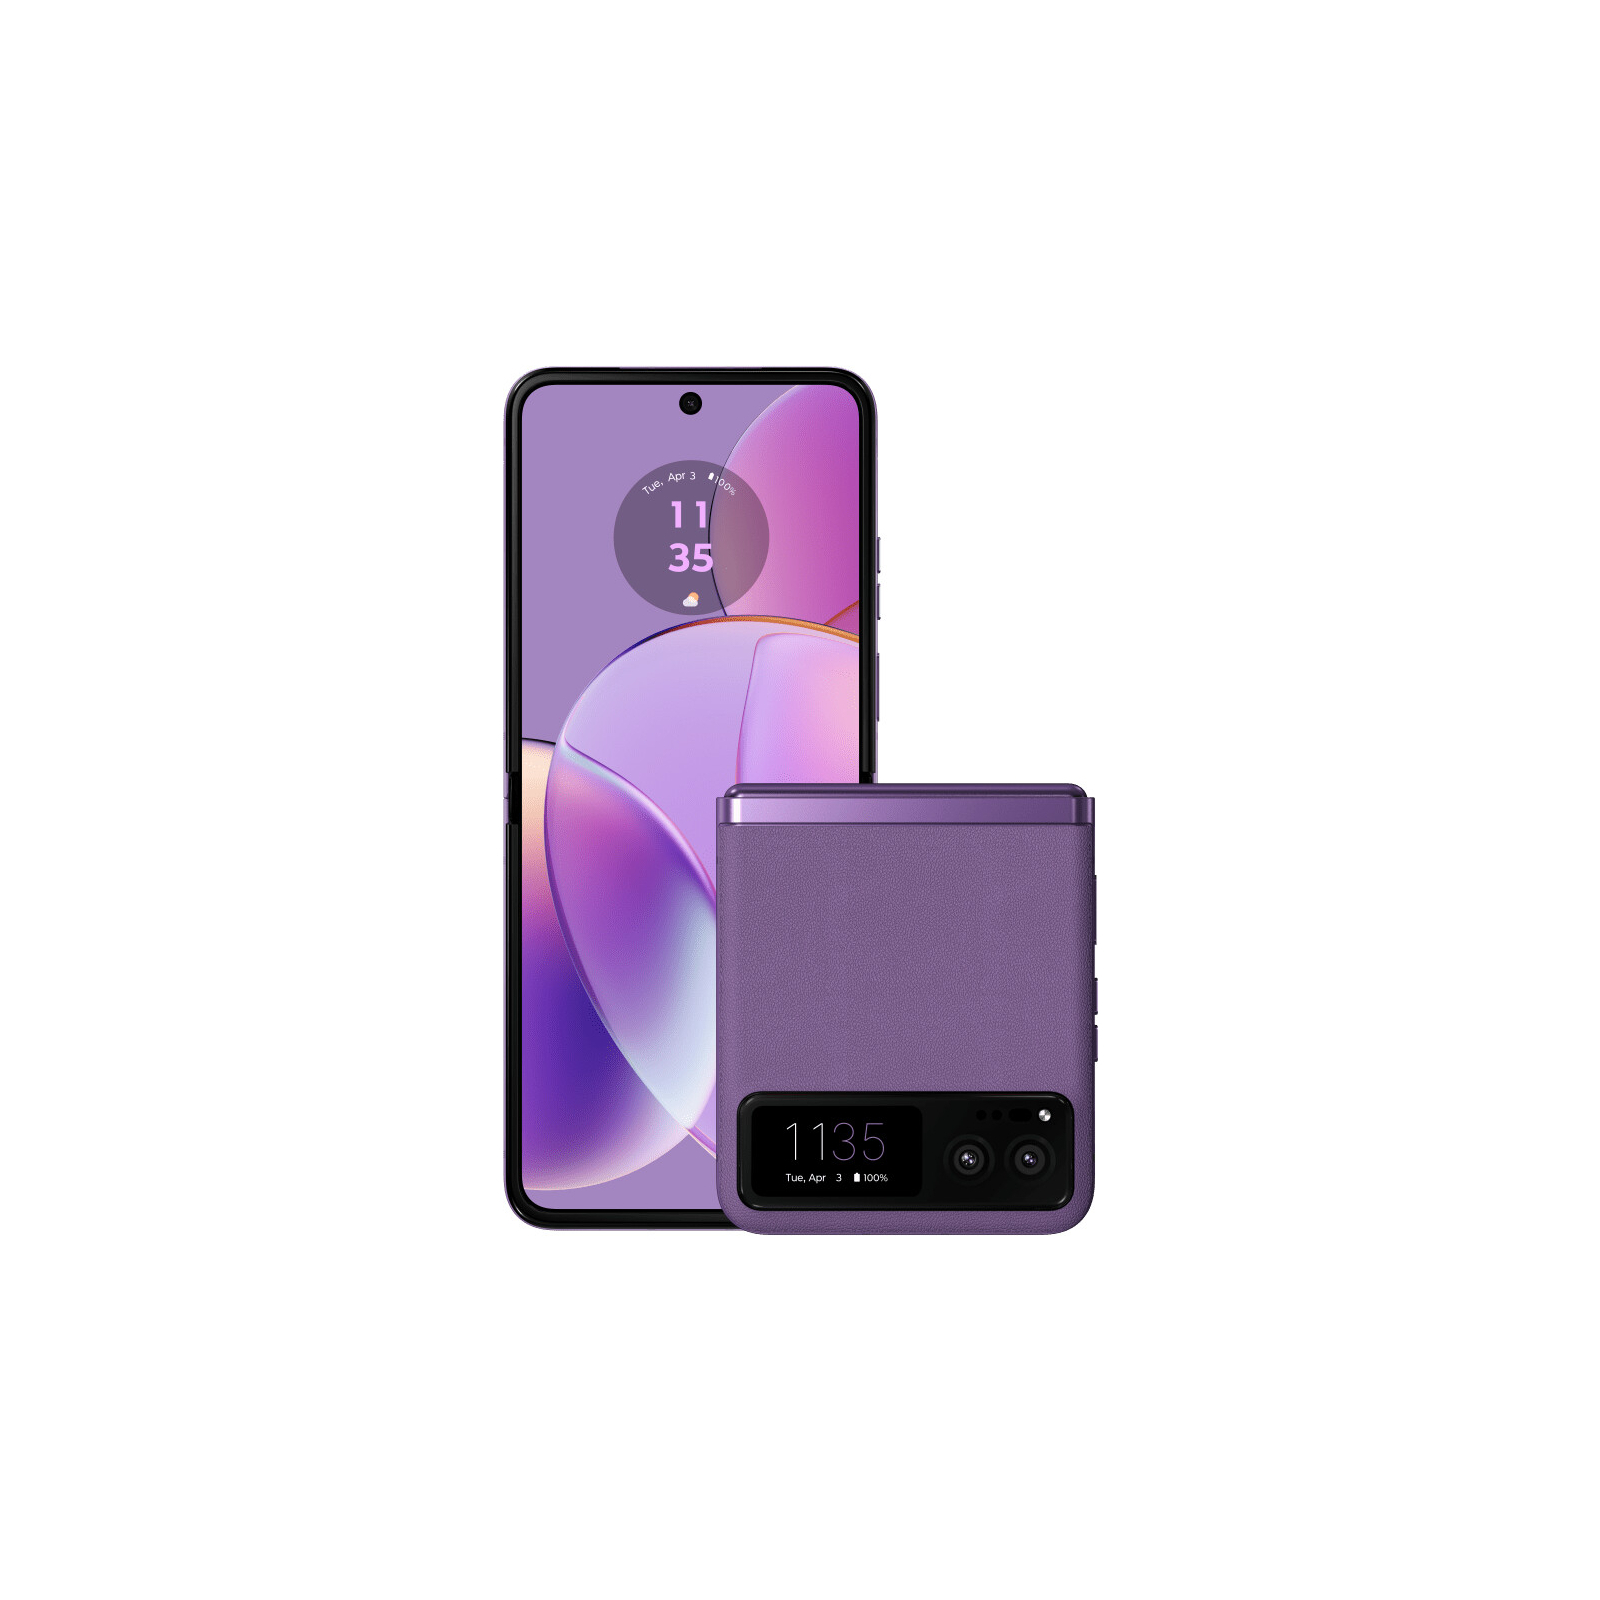 Мобільний телефон Motorola Razr 40 8/256GB Summer Lilac (PAYA0048RS)